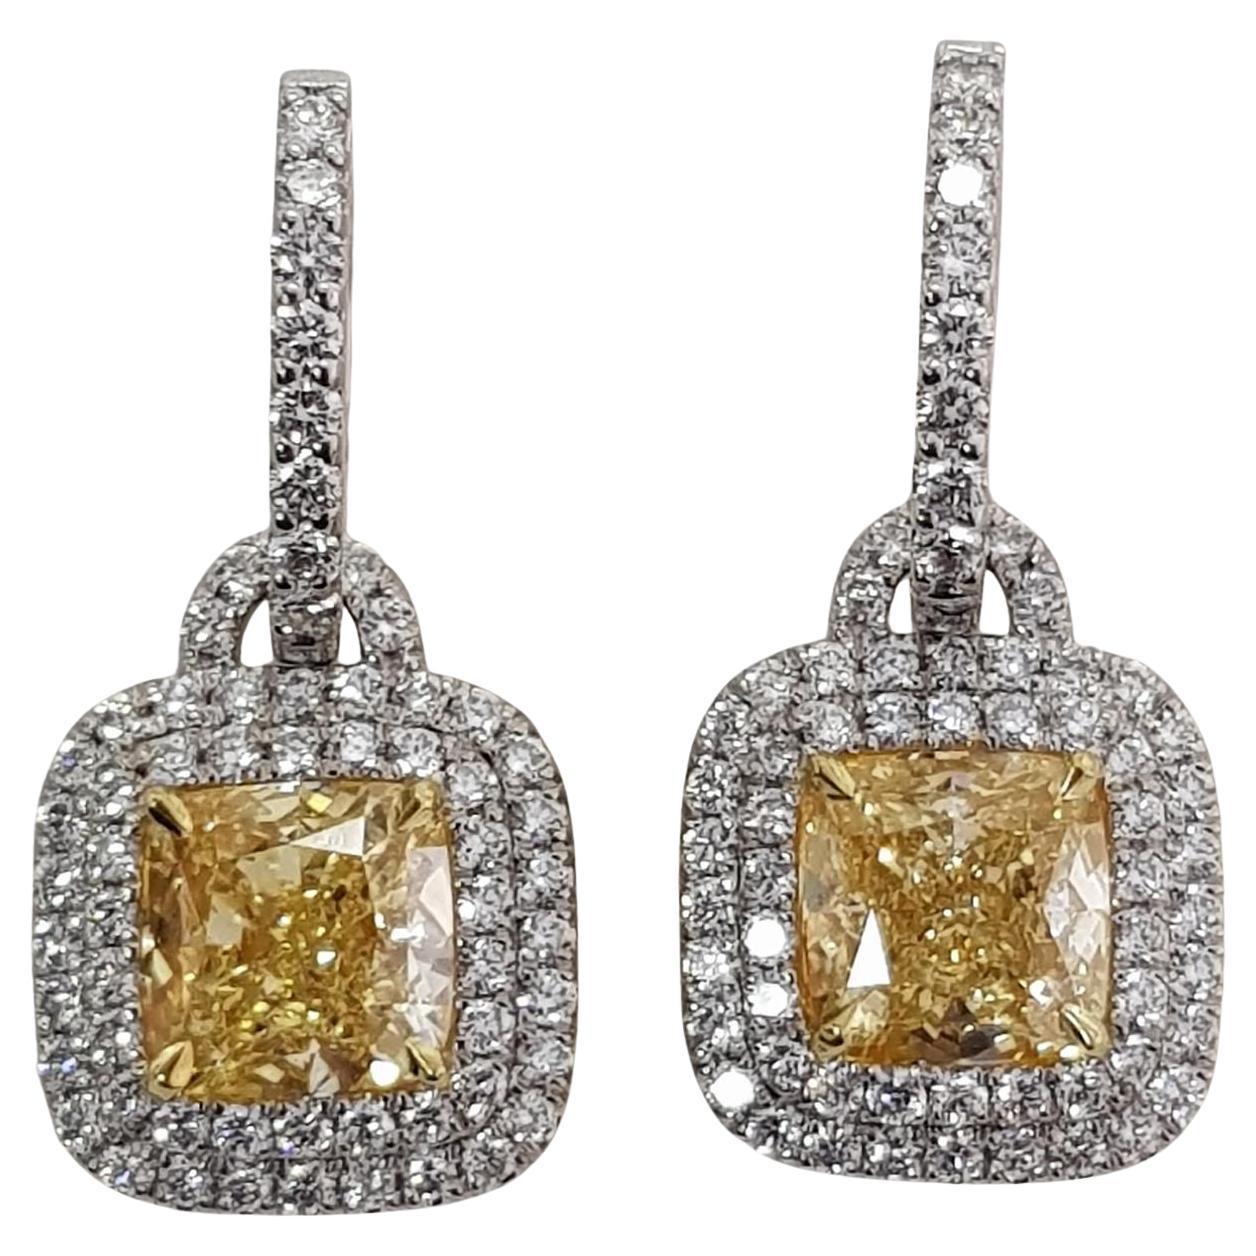 Ein exquisiter gelber Cushion-Diamant-Ohrring 
5 Karat
GIA-zertifiziert
VVS2 Klarheit